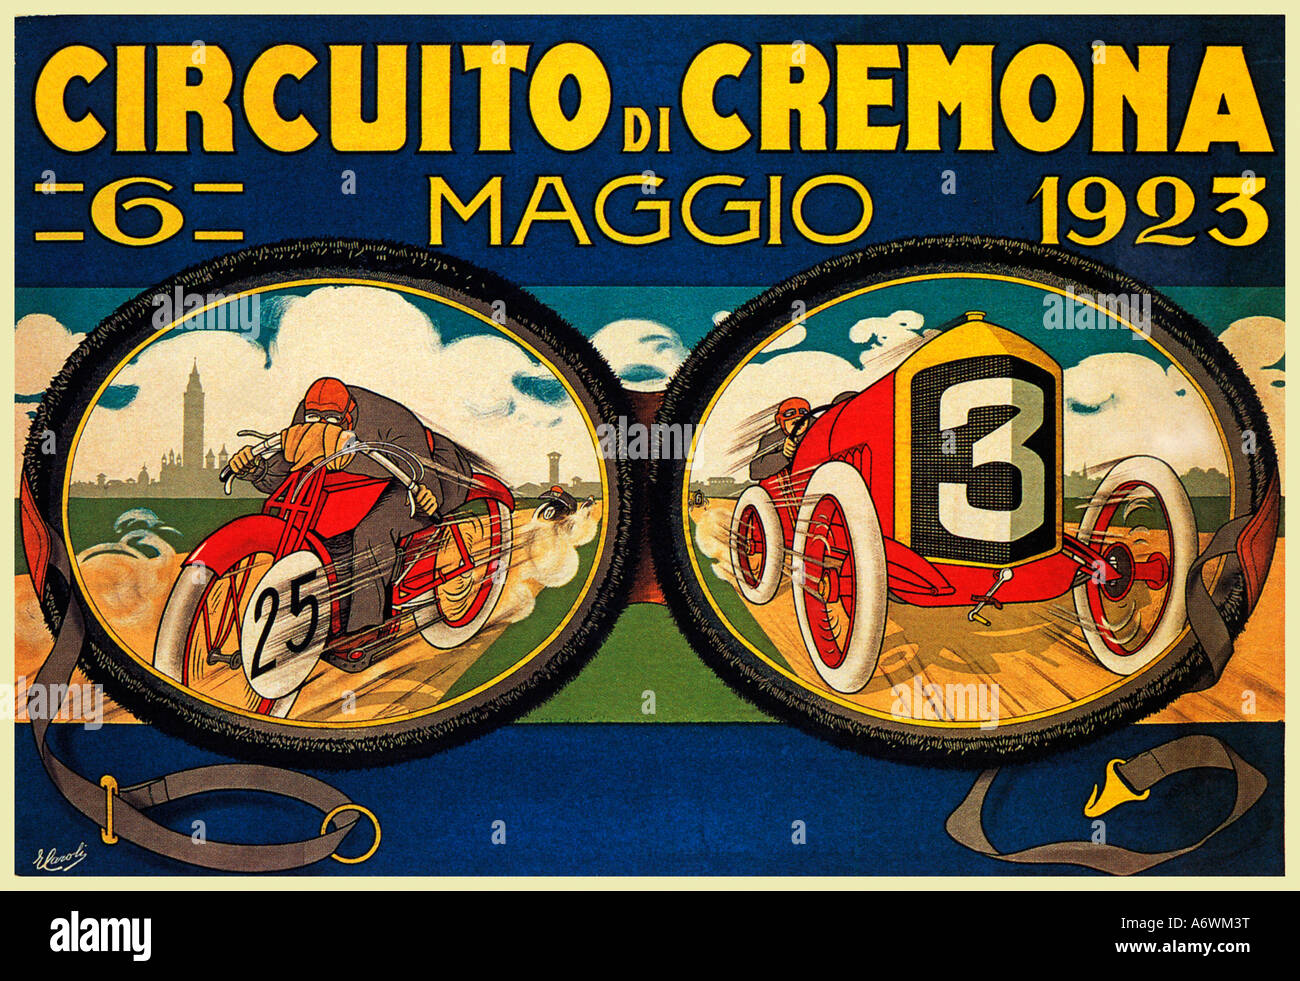 Circuito di Cremona 1923 affiche la publicité Caroli courses moteur autour de la ville italienne Banque D'Images